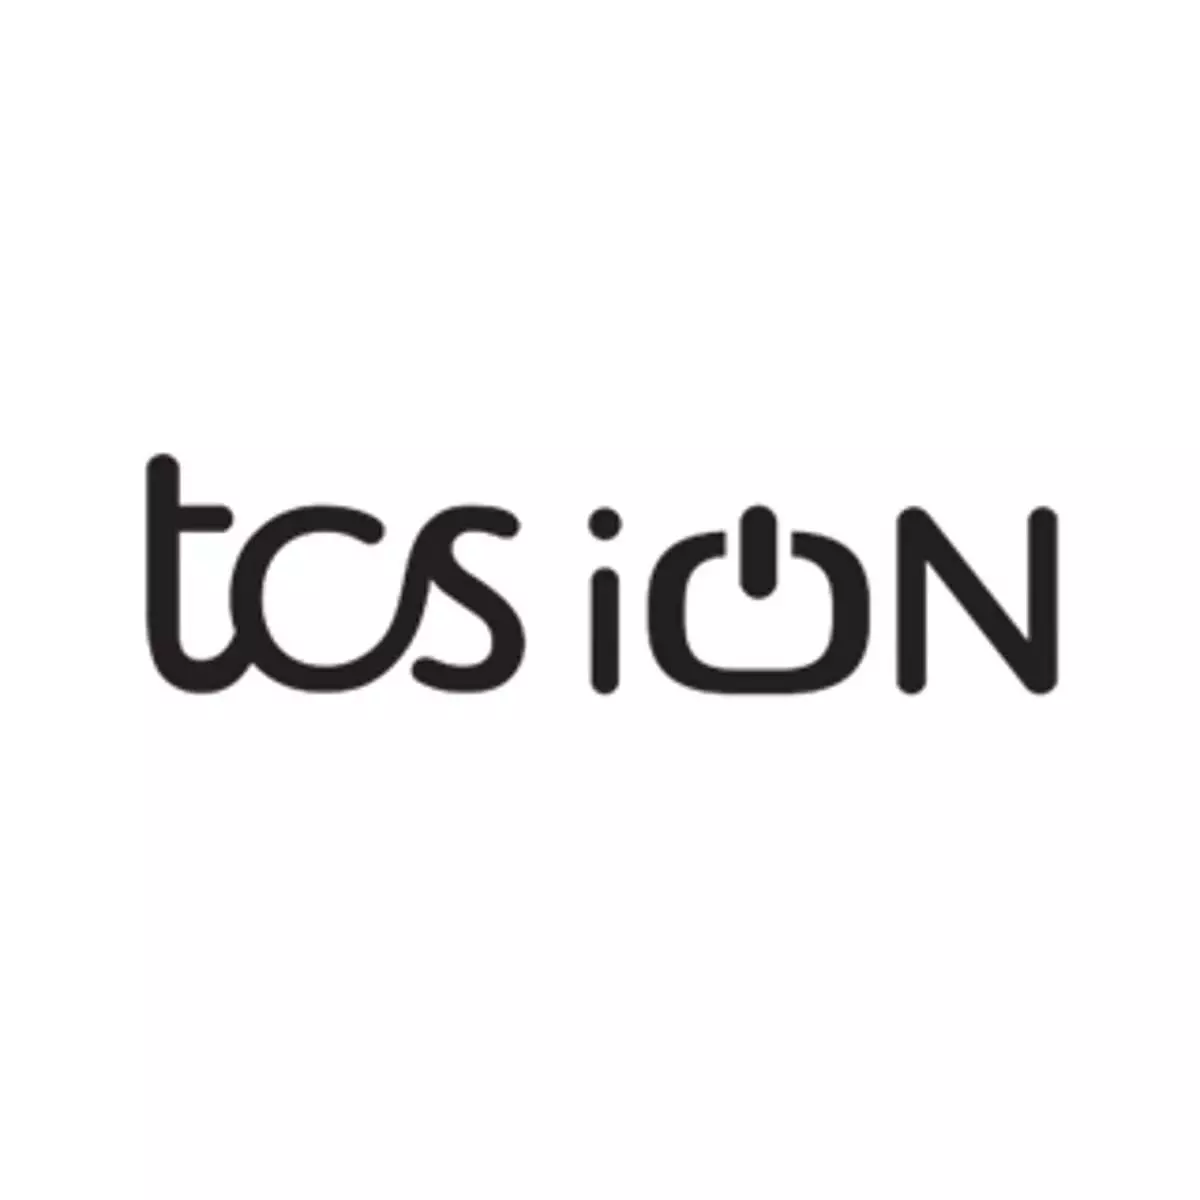 टीसीएस आईओएन, आईसीटी अकादमी छात्रों के लिए करियर परामर्श मंच प्रदान